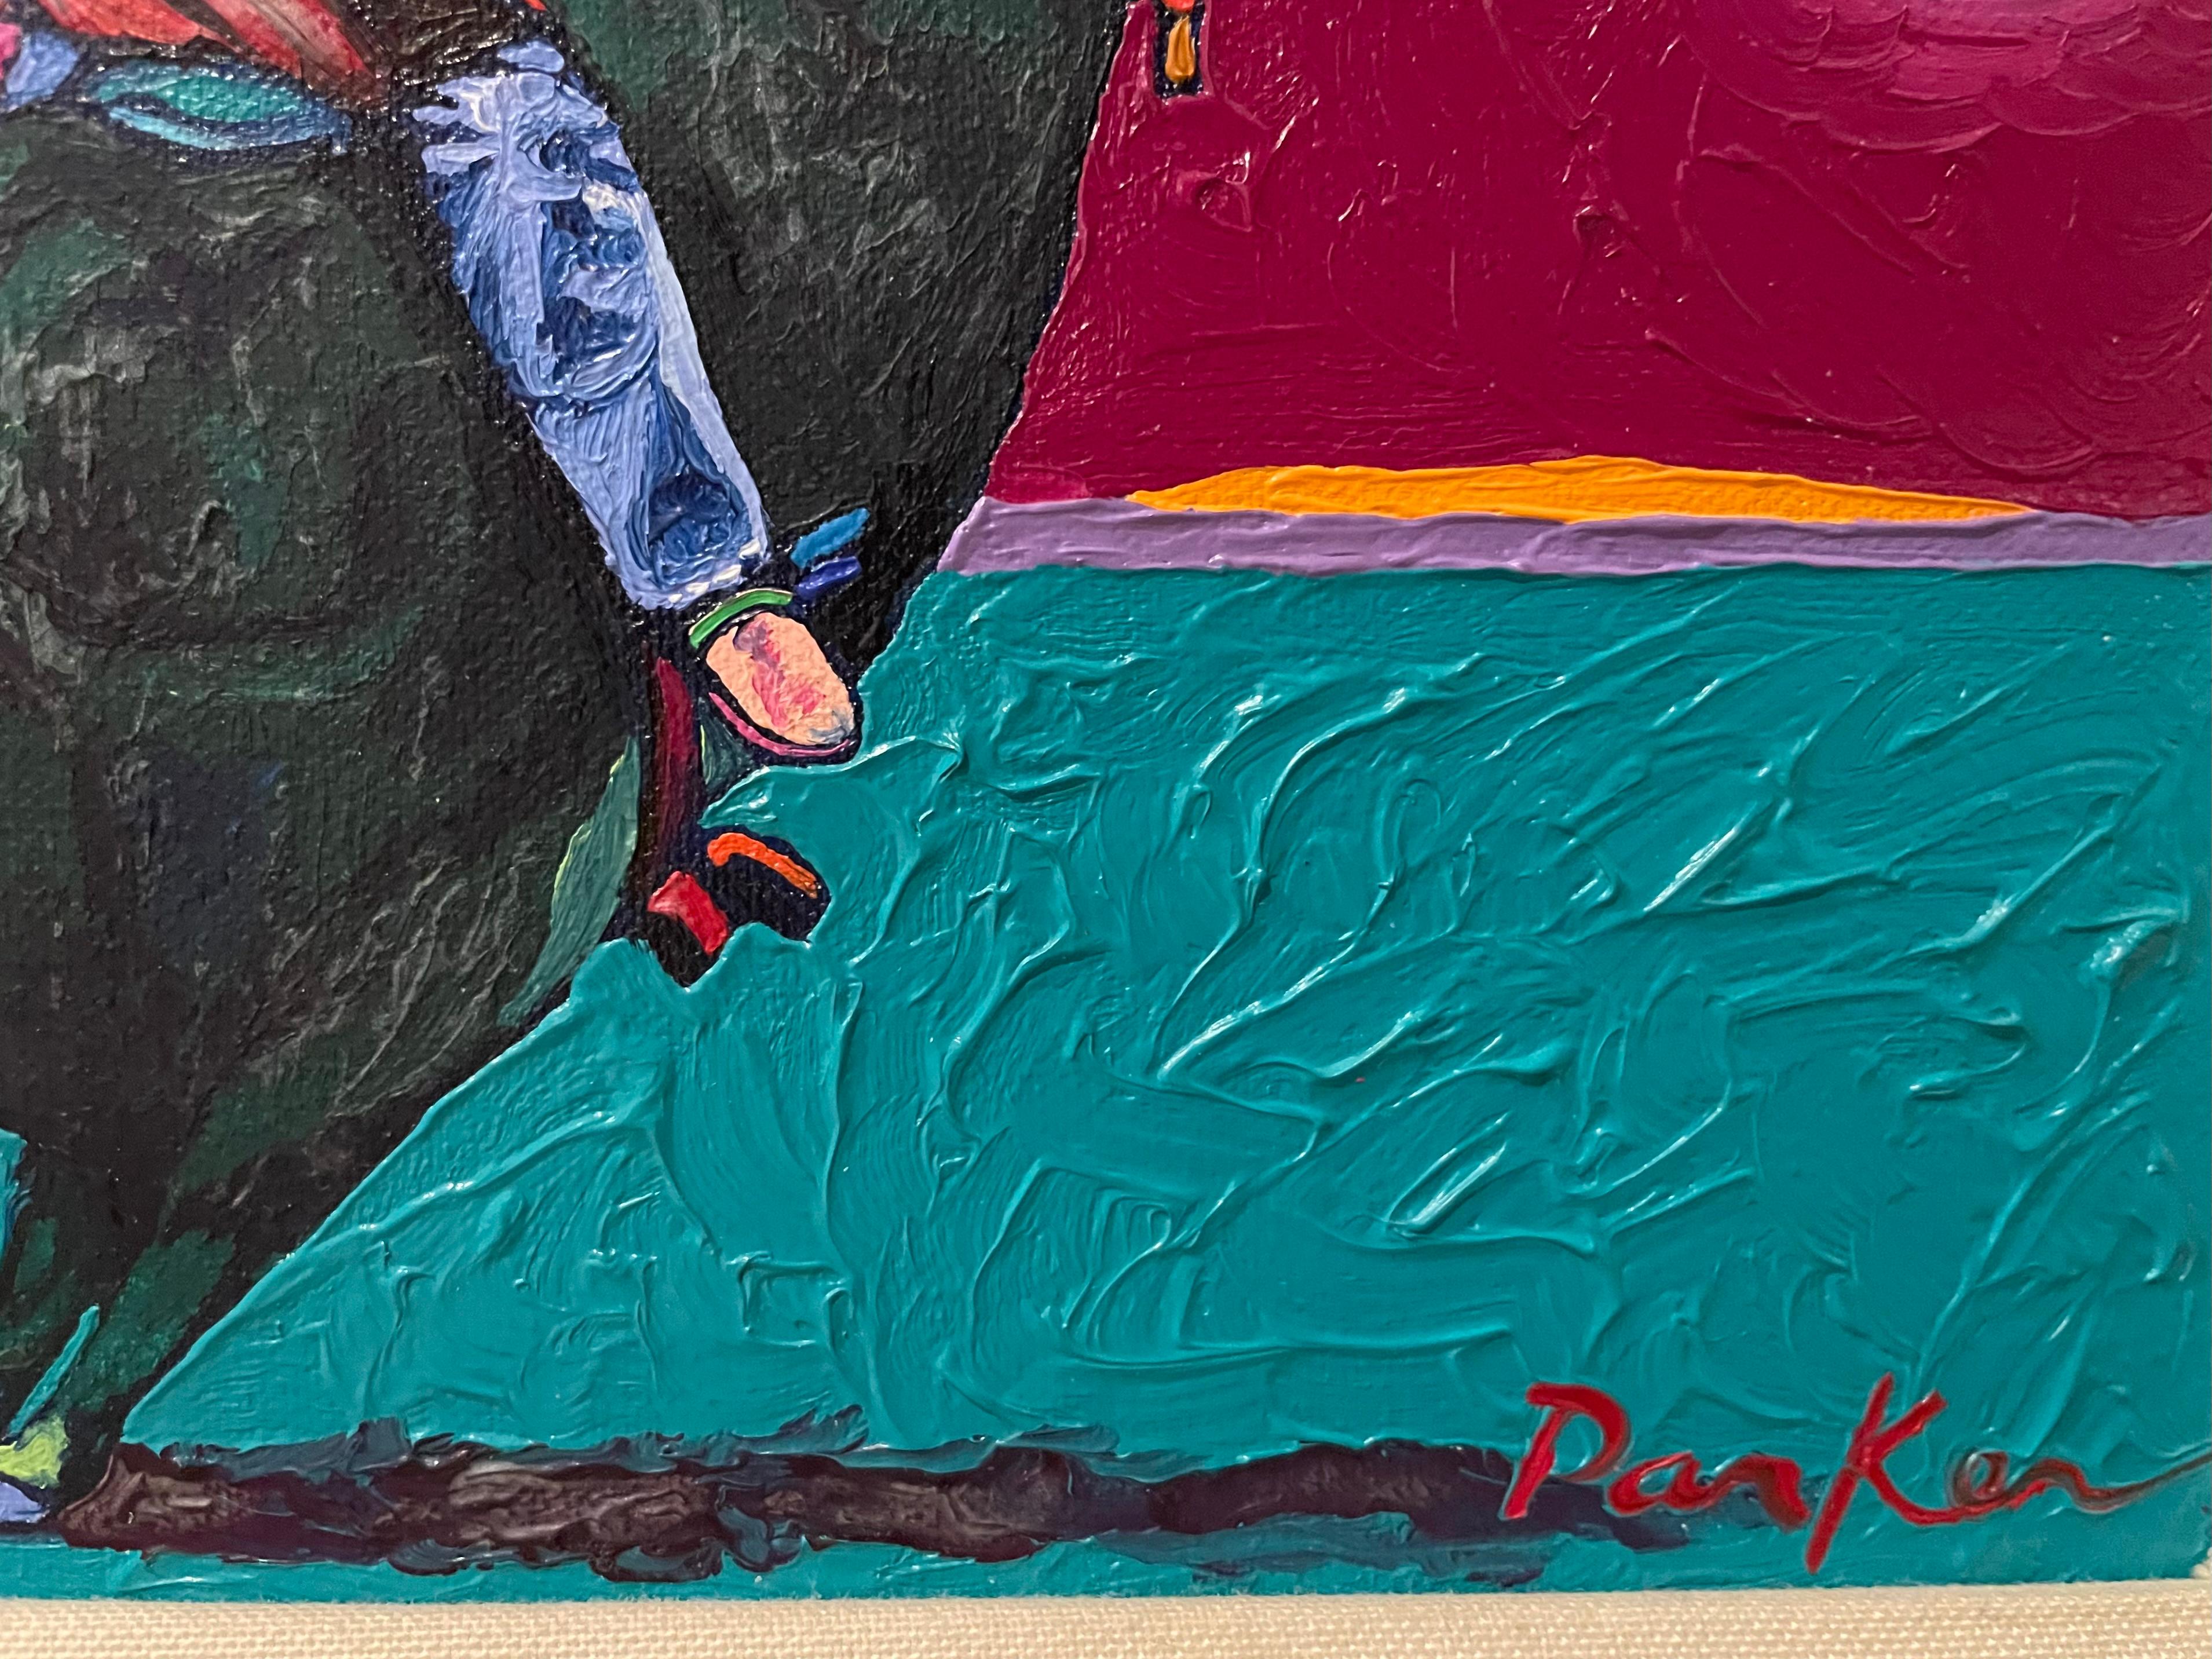 David Sherwin Parker ist ein amerikanischer Künstler, der sein künstlerisches Talent bereits im Kindesalter zeigte. Er ist bekannt für seine klassischen Gemälde und Drucke mit verschiedenen Themen wie Westernlandschaften, Cowboys und klassische